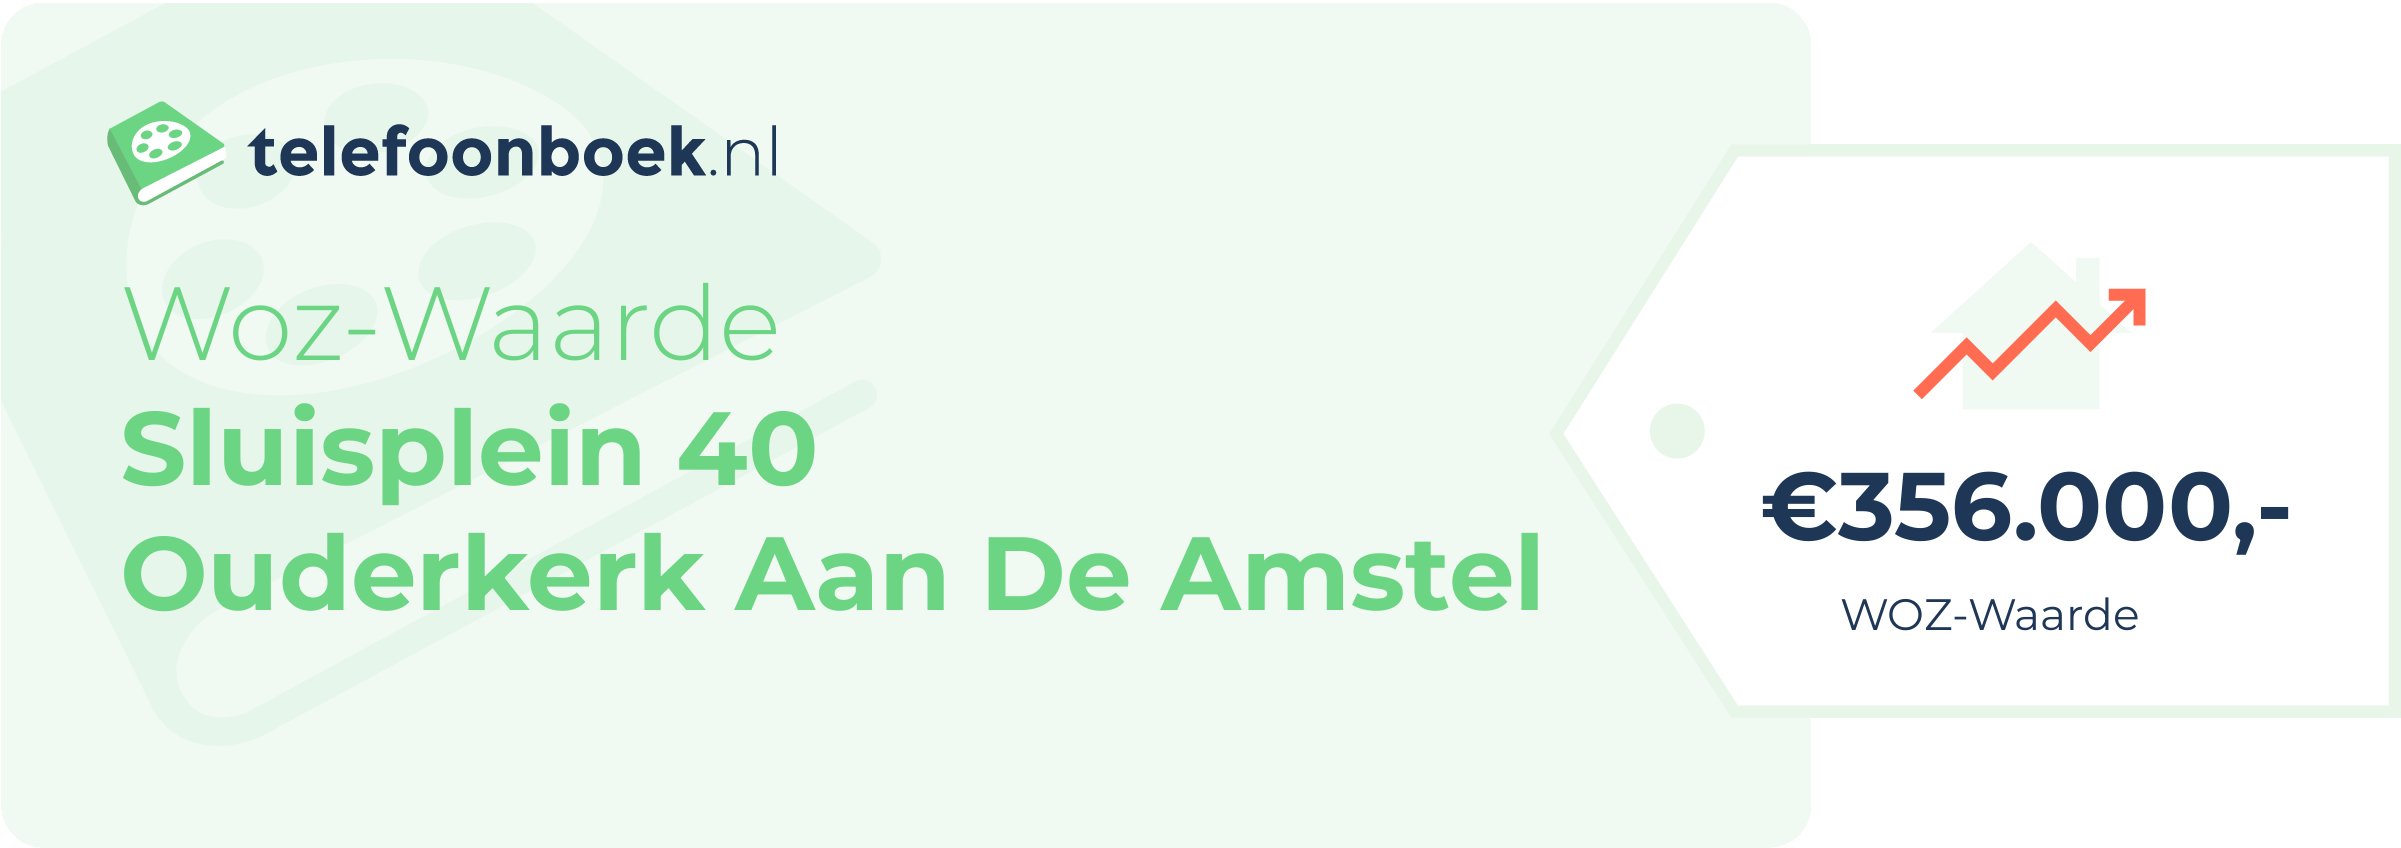 WOZ-waarde Sluisplein 40 Ouderkerk Aan De Amstel